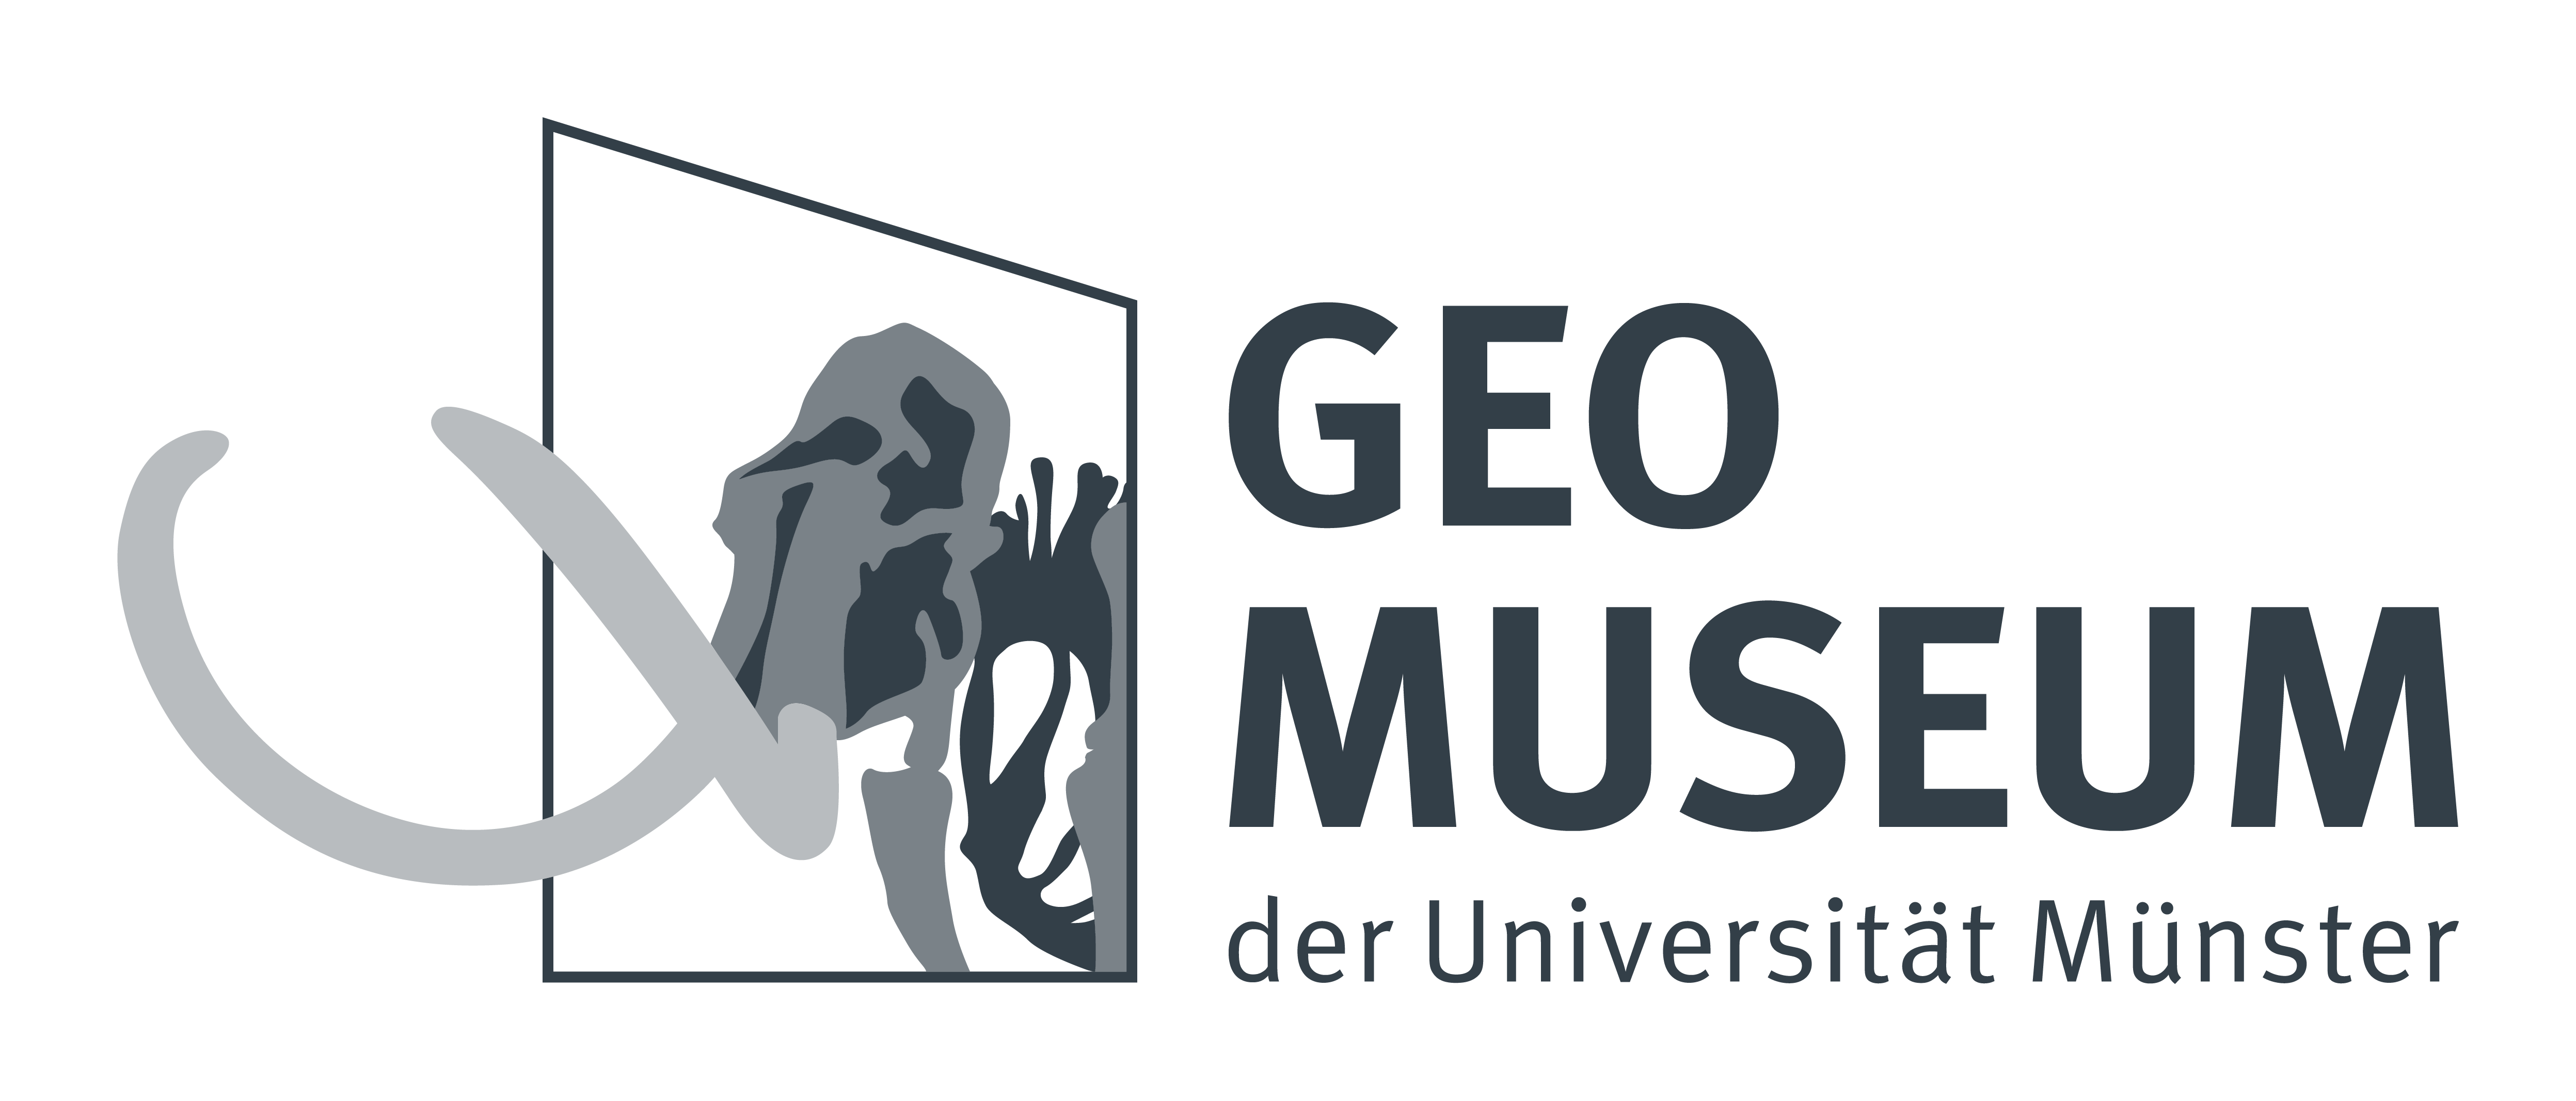 Geomuseum der Unversität Münster